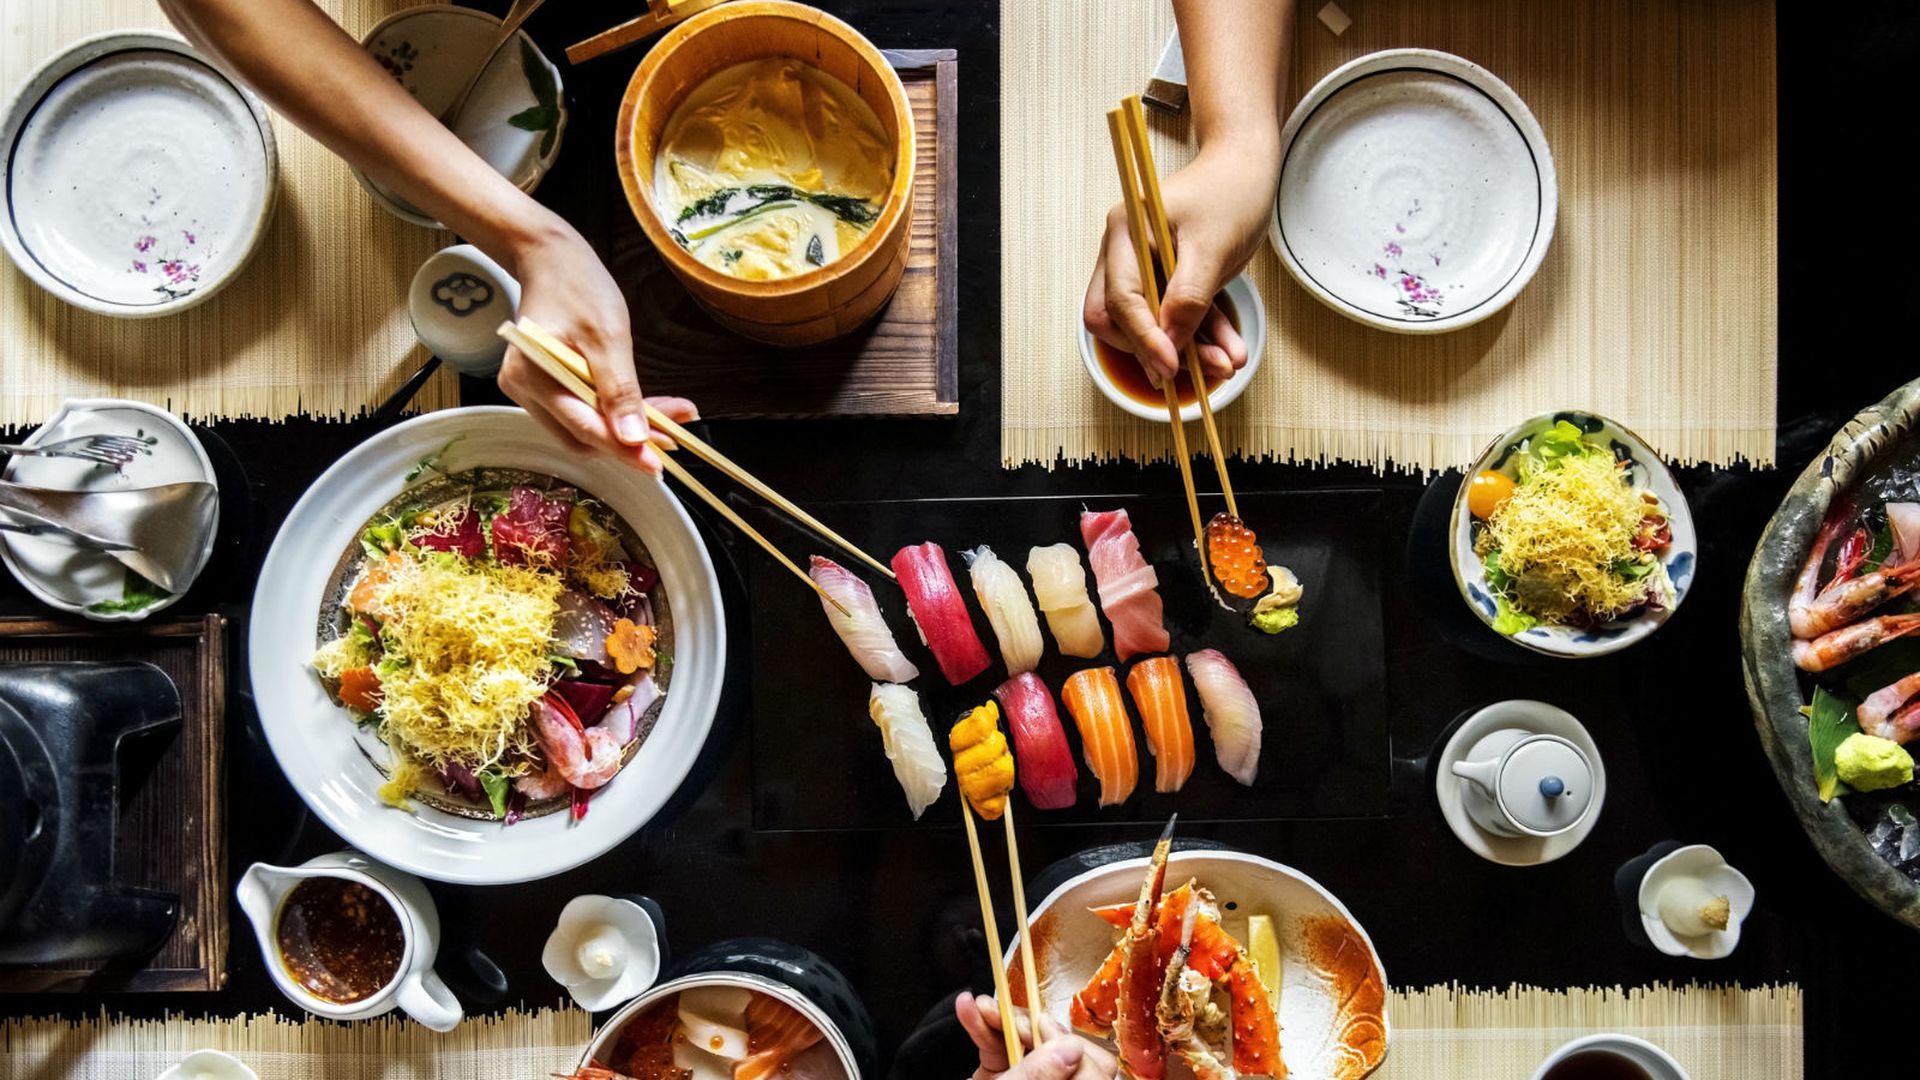 Otantik Japon Mutfağının Sırlarını Açığa Çıkarmak: Suşi'den Ramen'e